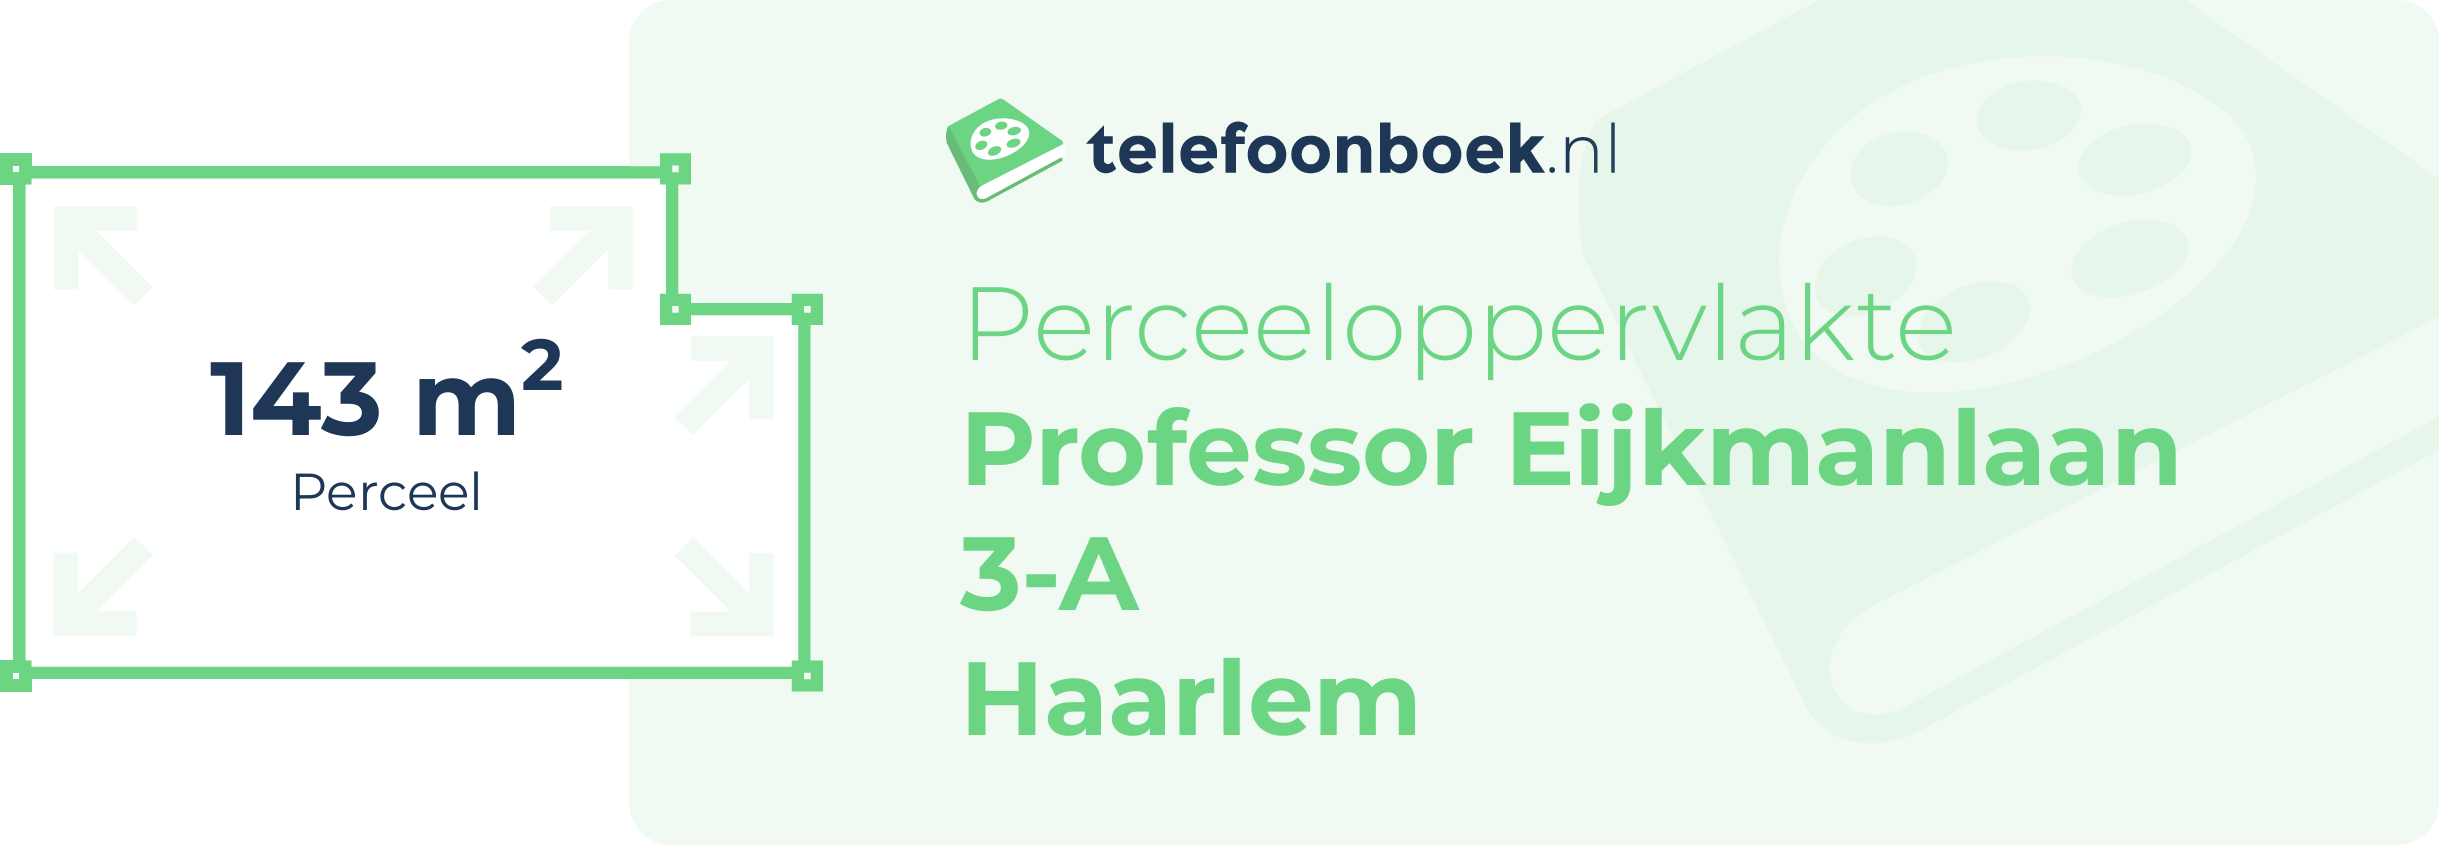 Perceeloppervlakte Professor Eijkmanlaan 3-A Haarlem